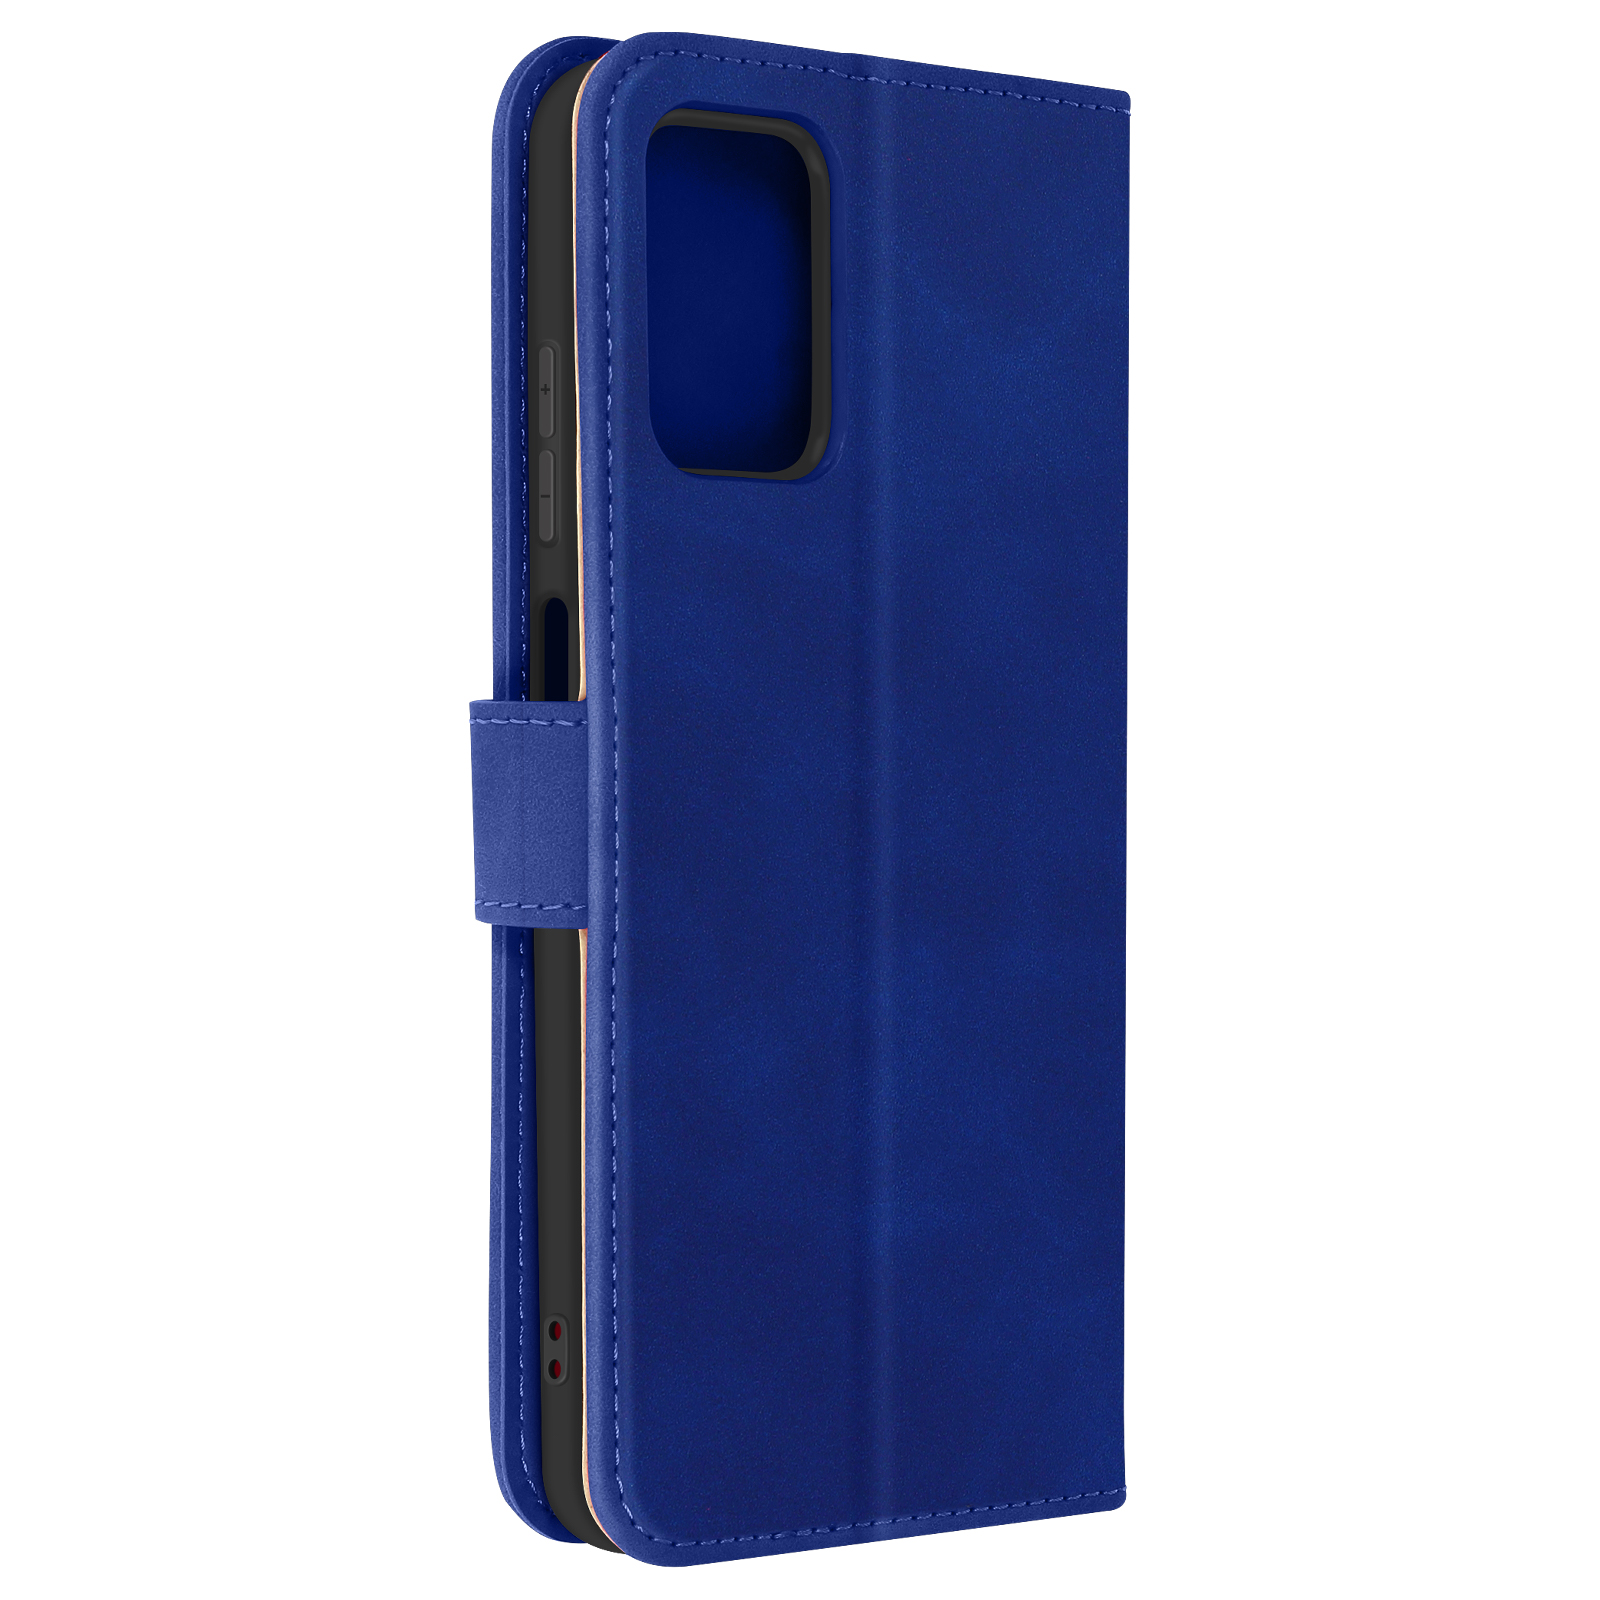 Bookcover, Series, 5G, G42 Nokia, Cover Sleek Nokia AVIZAR Blau